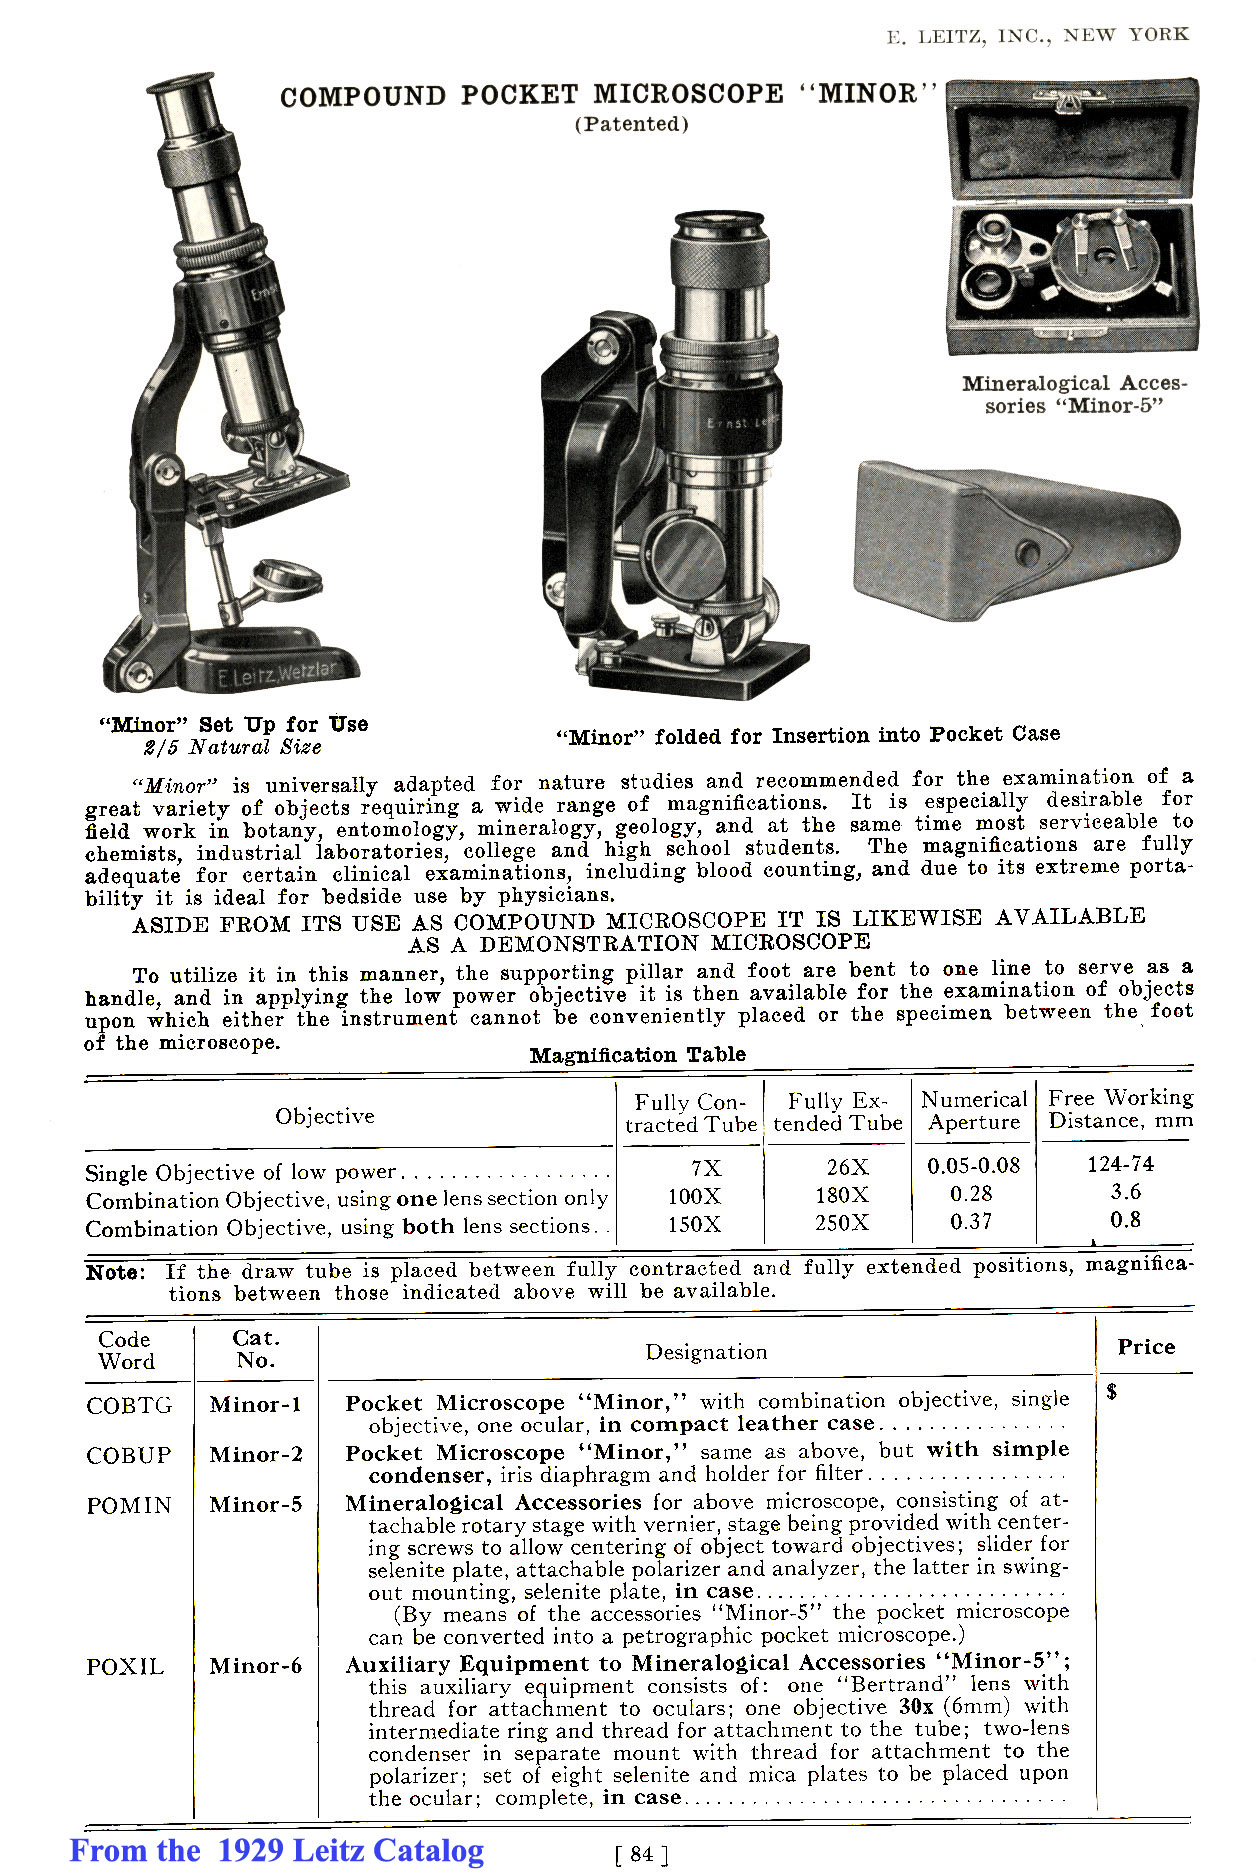 Minor Microscope 1929 from catalog